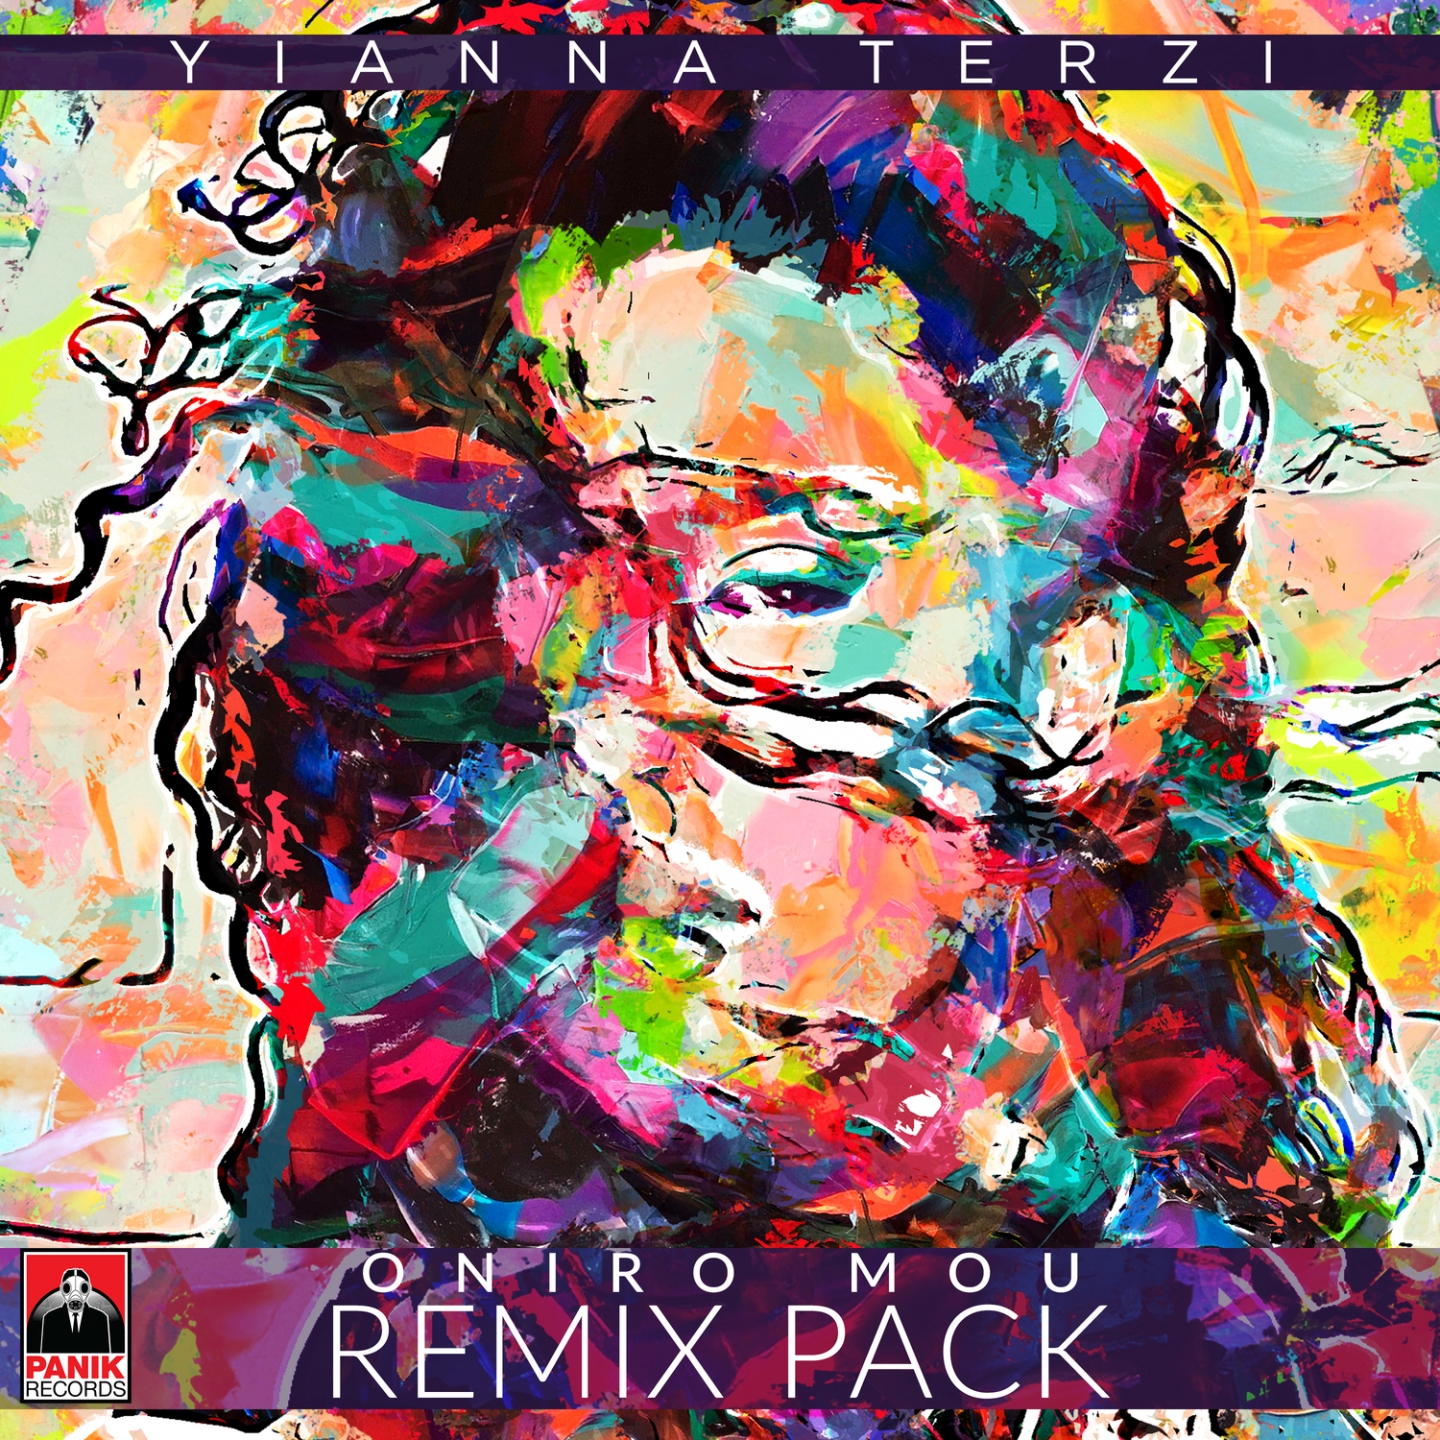 Oniro Mou (Remix Pack)